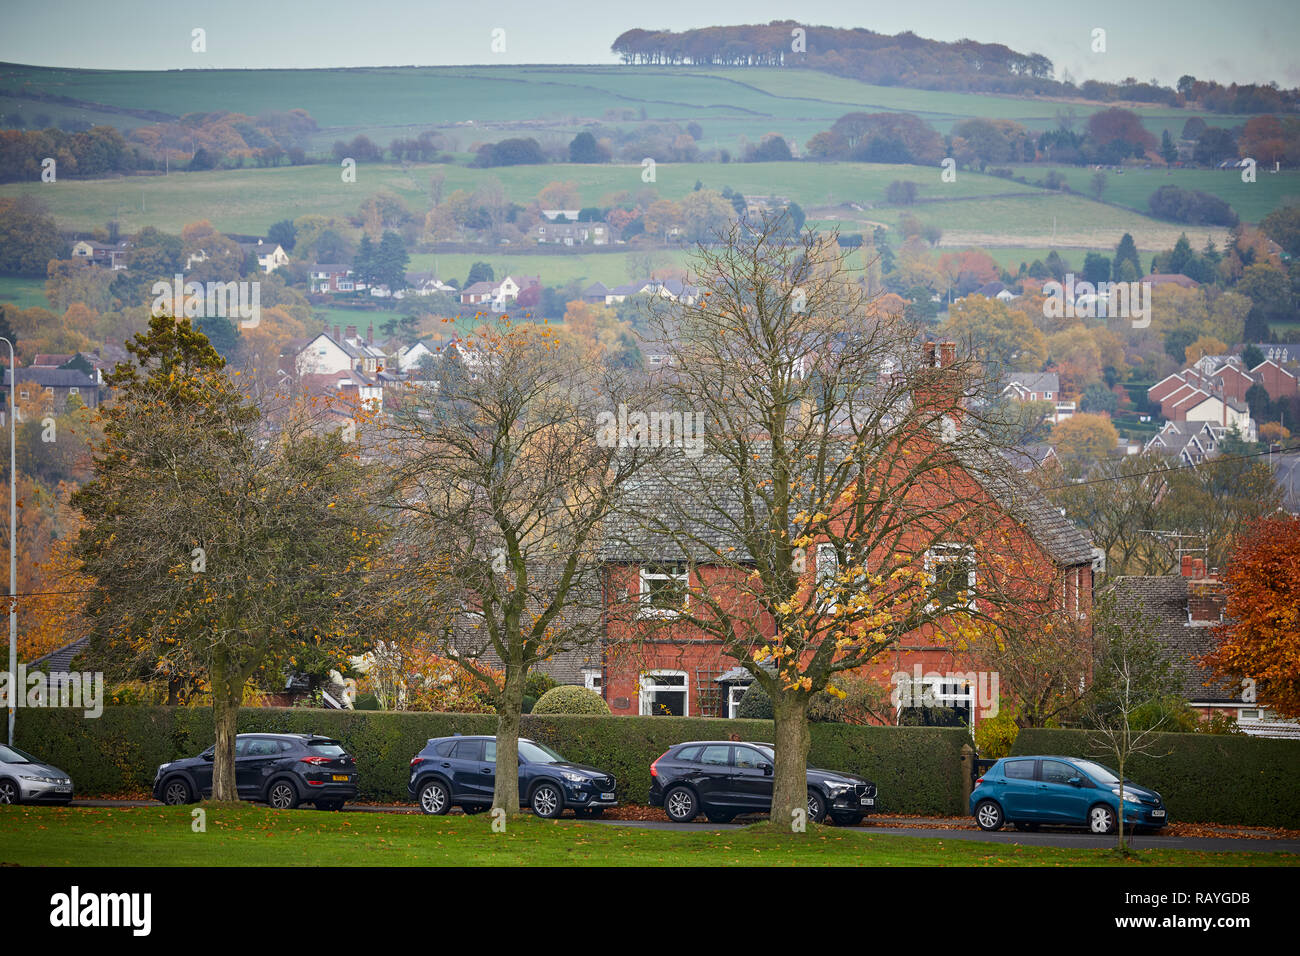 Marpel Dorf in Stockport, Cheshire die Hügel über dem Grün gesehen Stockfoto